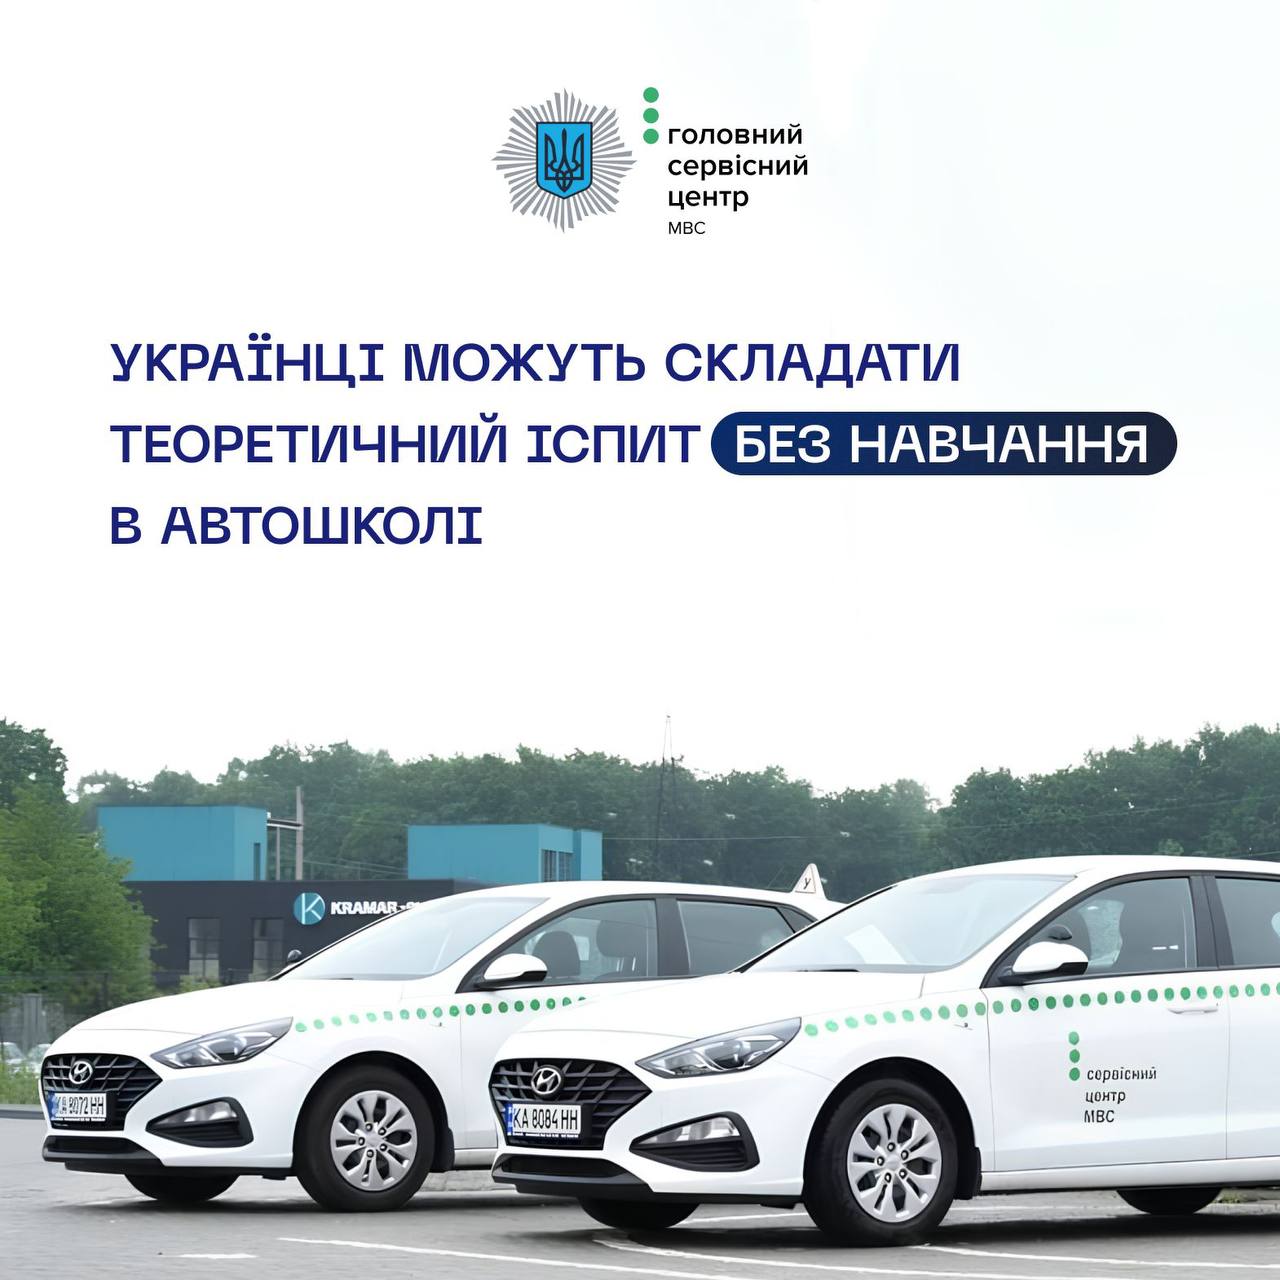 ❗️Теорію можна буде здавати не в автошколі, – МВС України